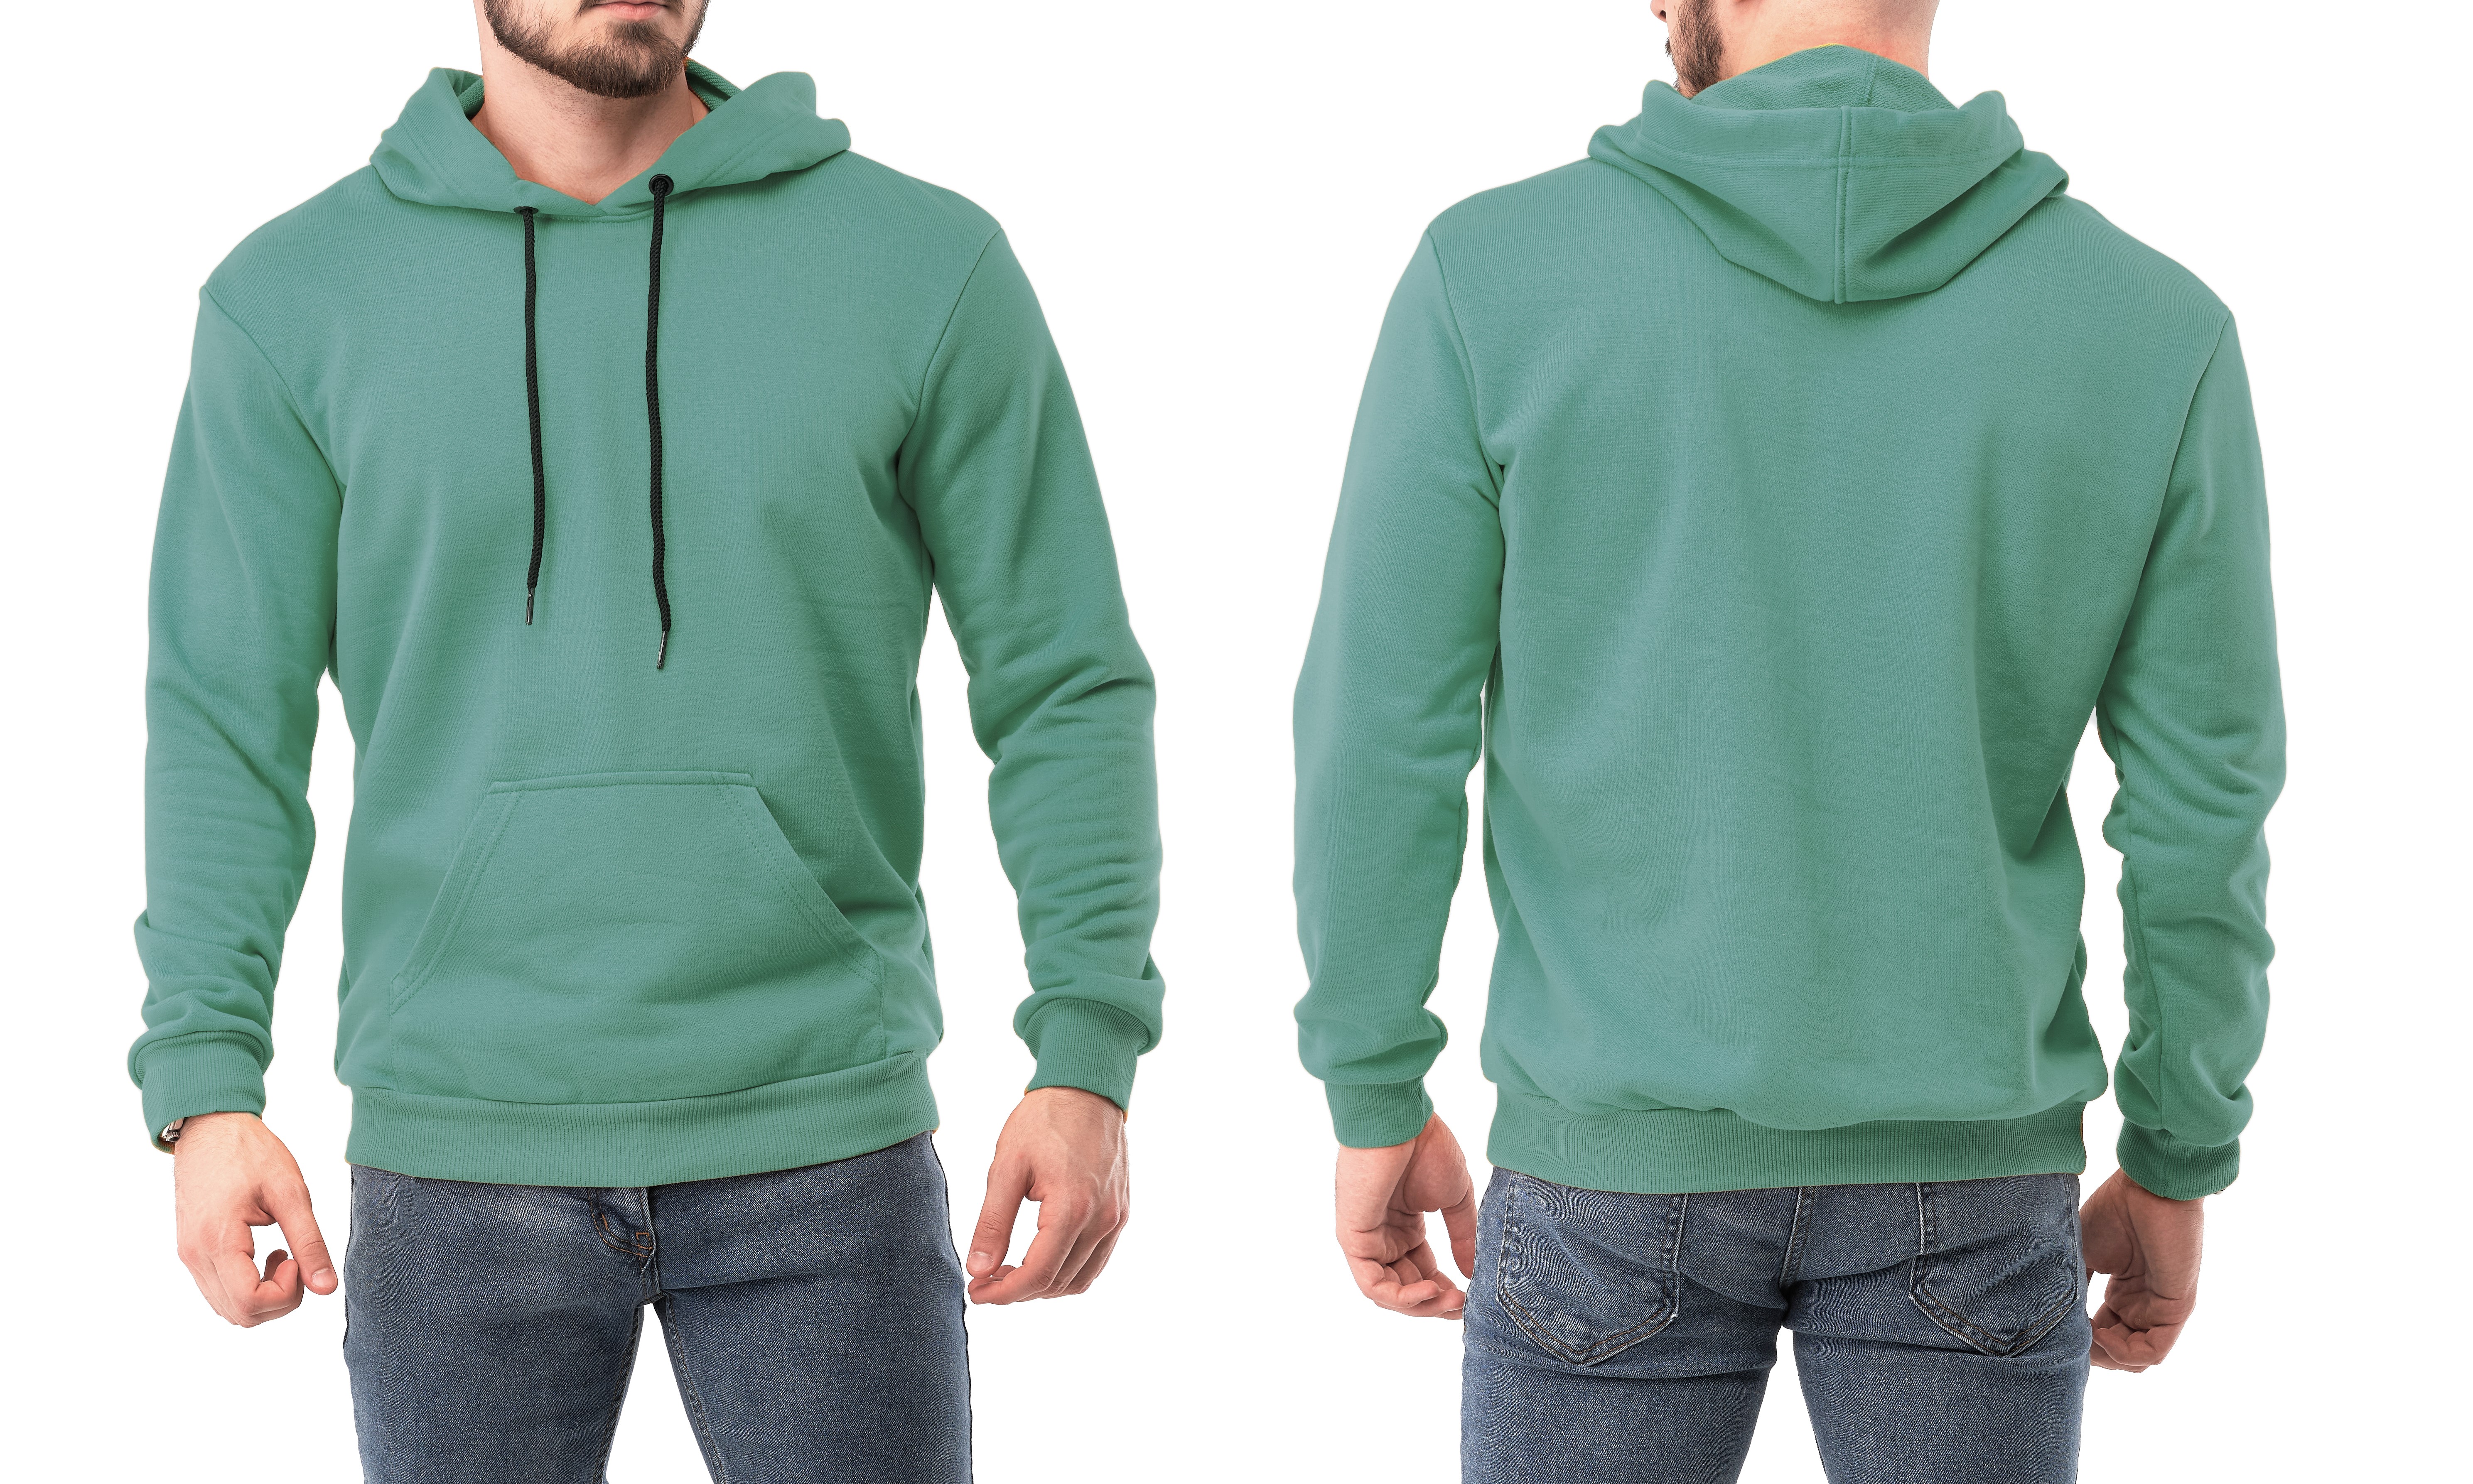 Bedrukken van hoodies en truien voor uw bedrijf